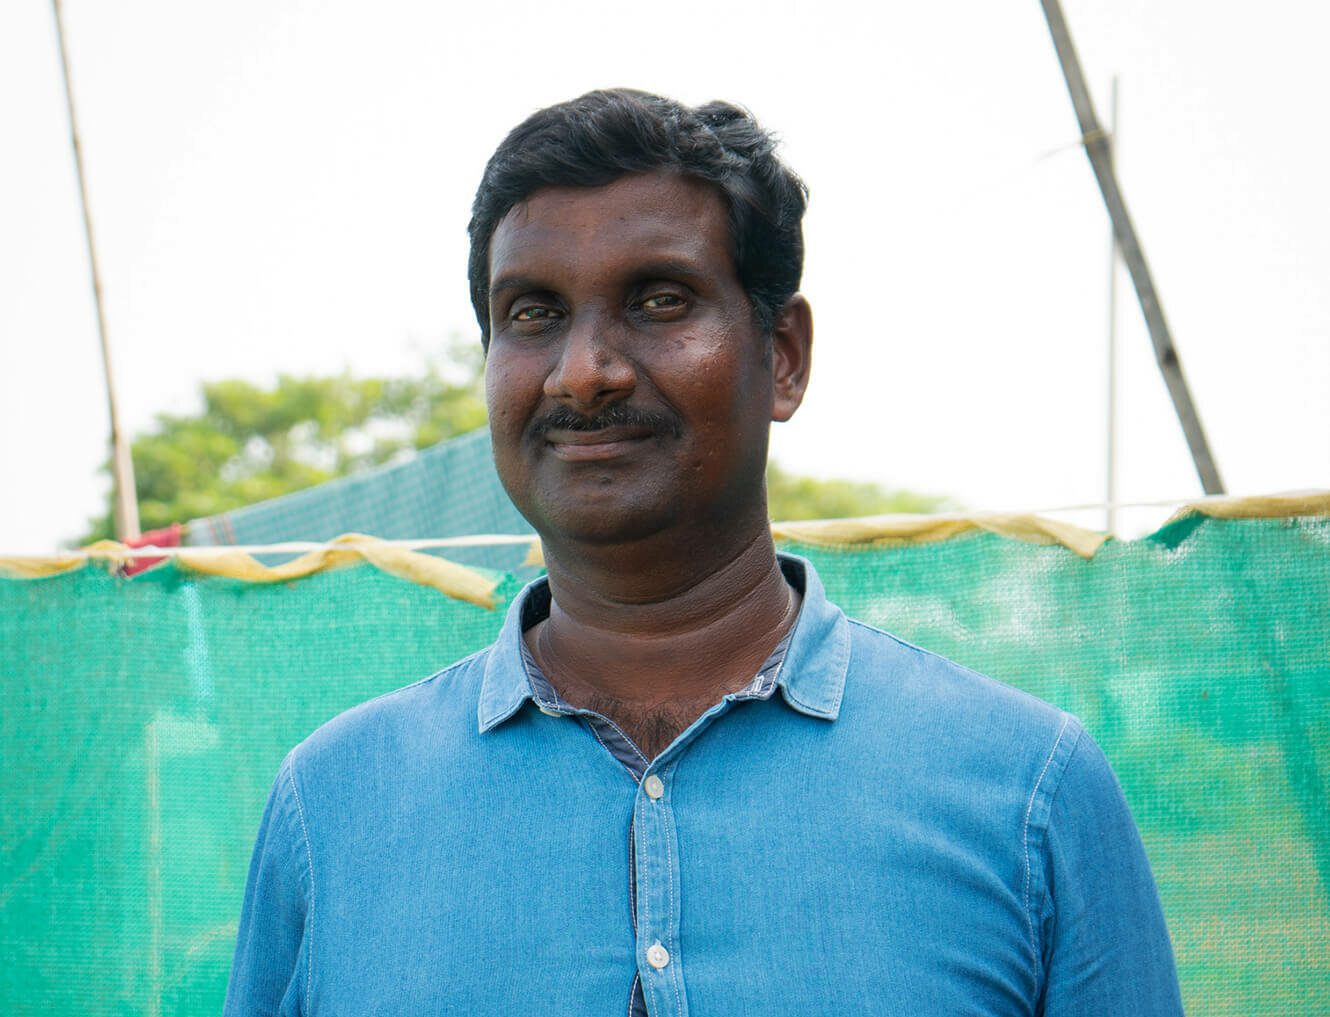 Krishnam headshot, aquaexchange customer